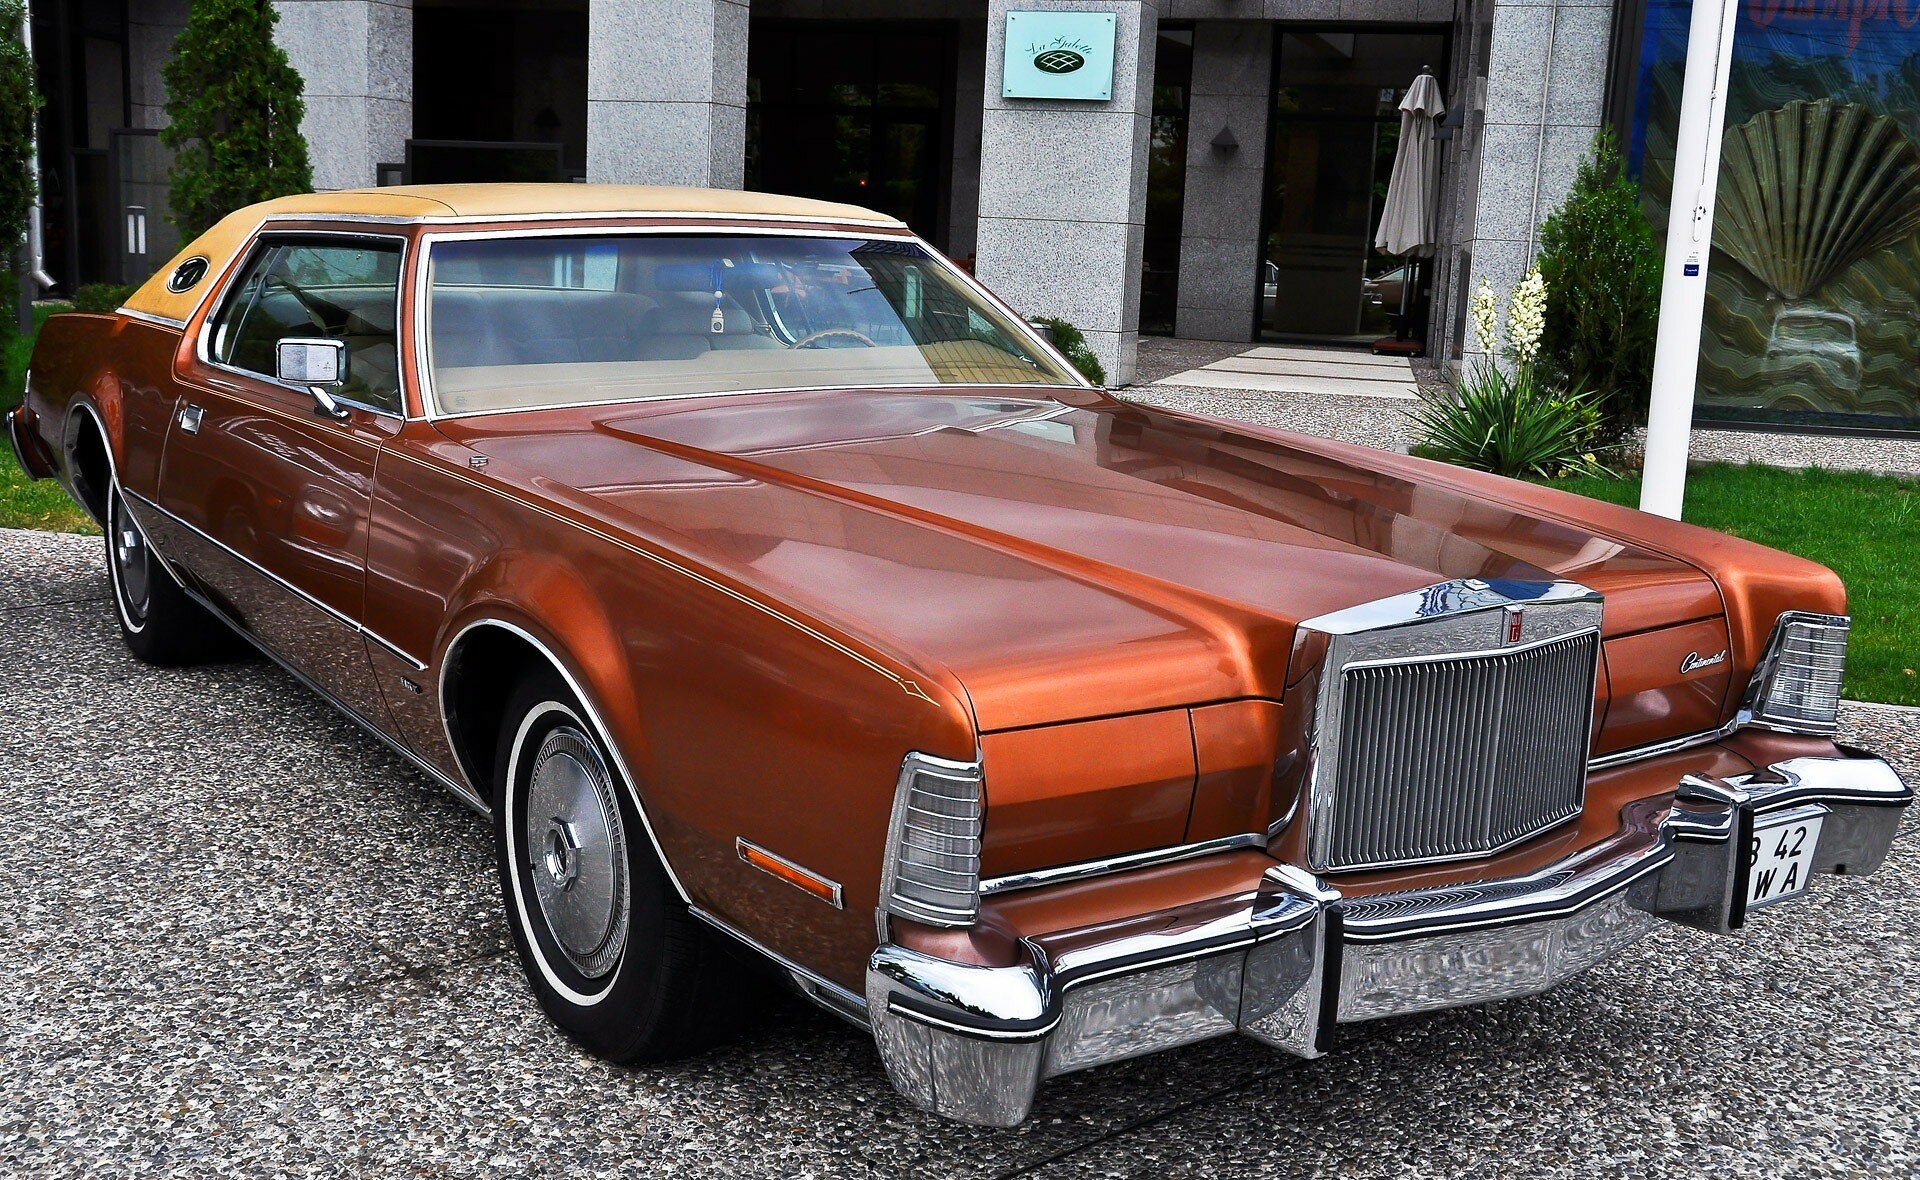 На аукціон виставили Cadillac з кришталевою люстрою в салоні